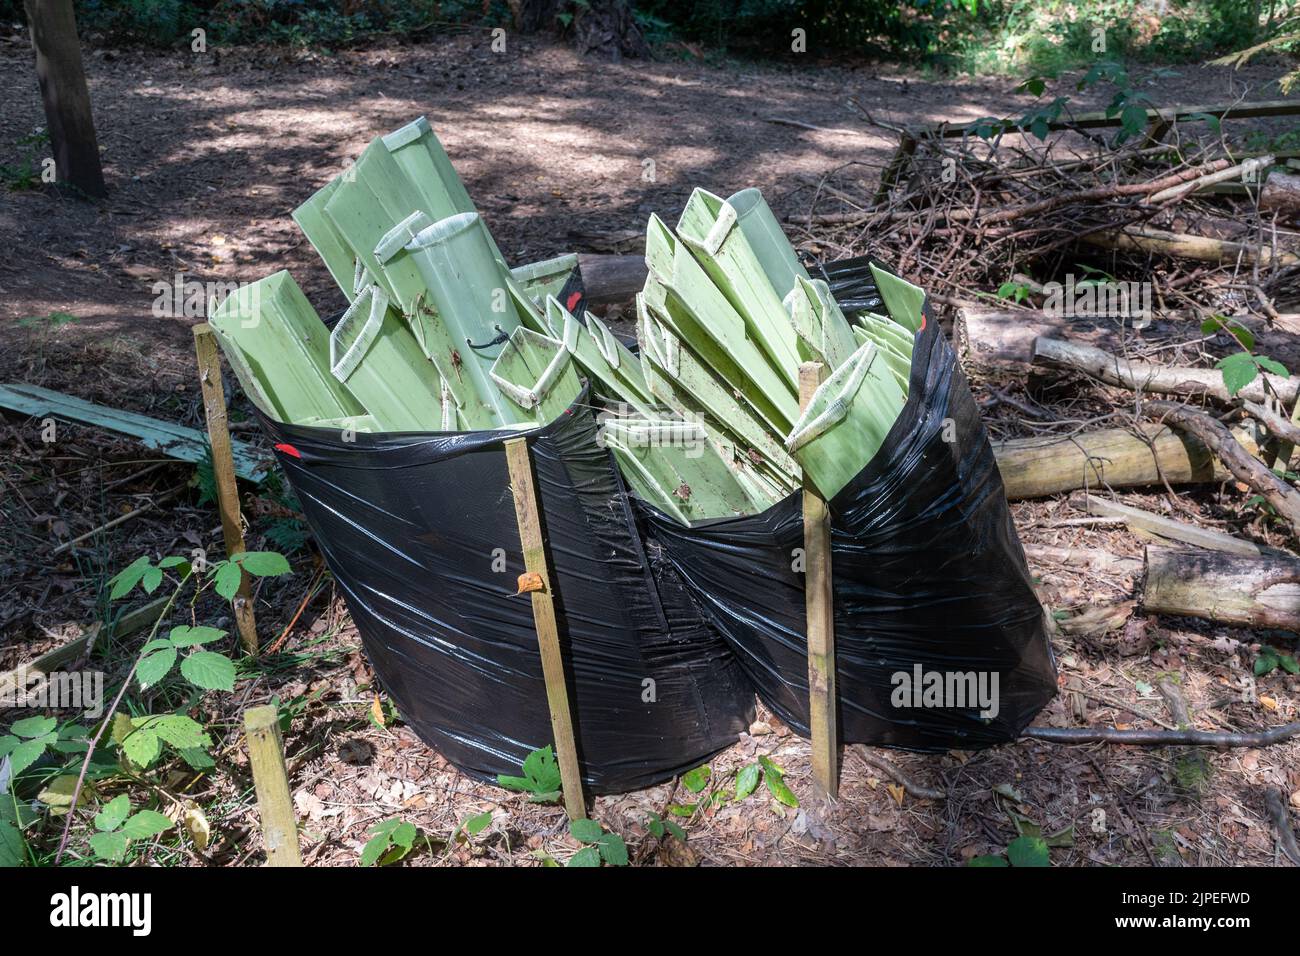 Mangas de plástico verde de un proyecto de plantación de árboles recogidas posteriormente en sacos negros para su eliminación, Reino Unido Foto de stock